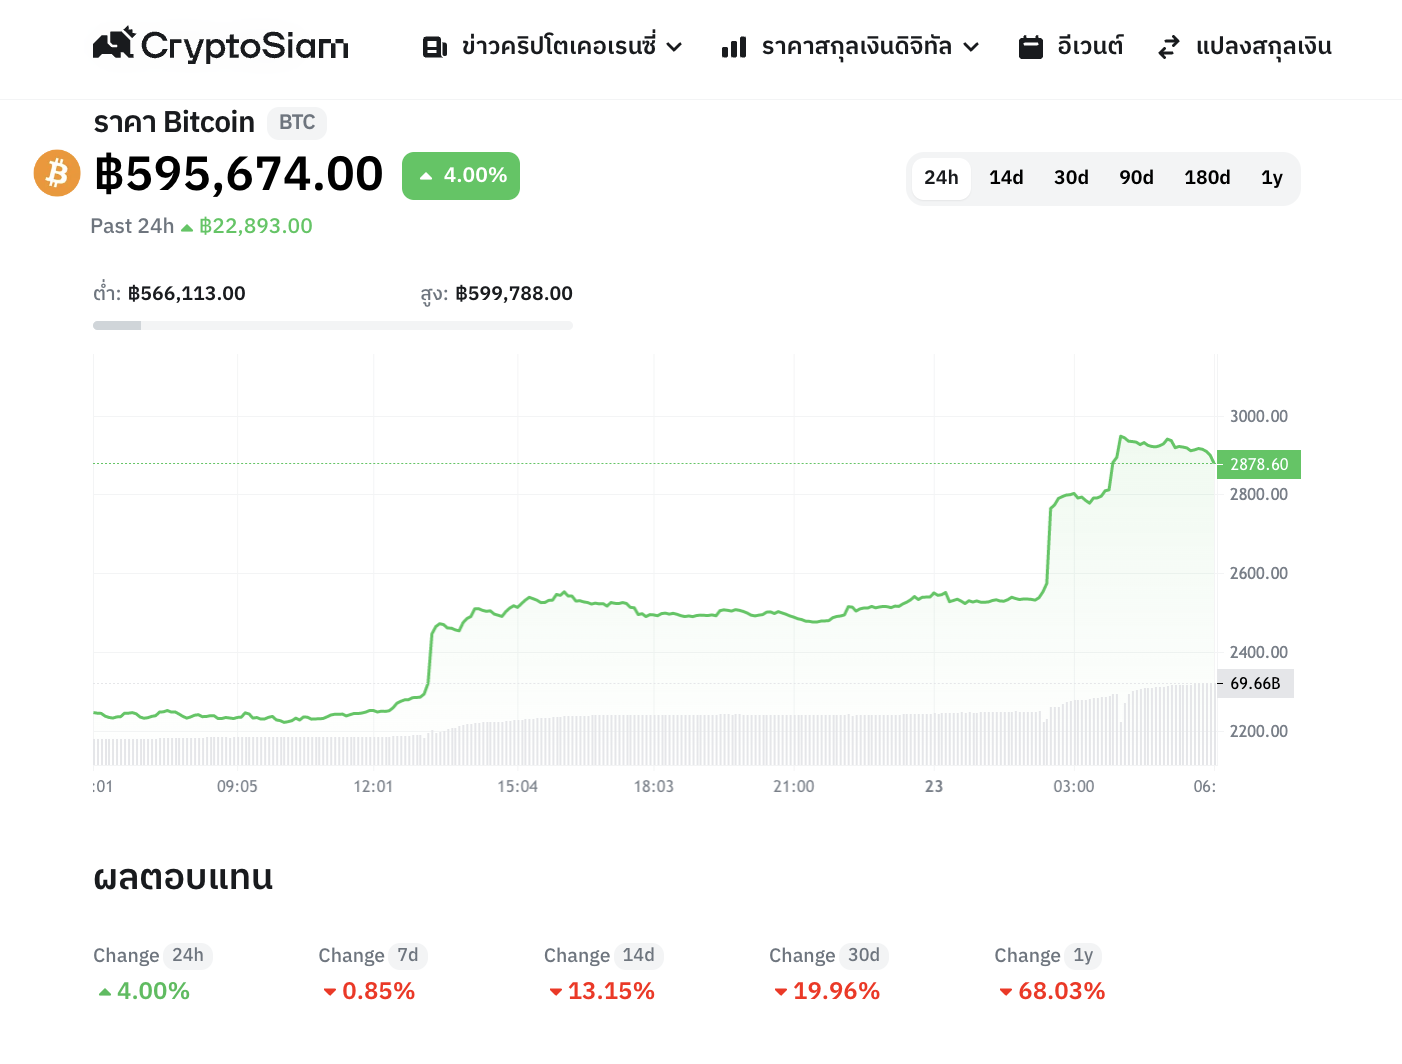 <i>กราฟราคา Bitcoin และข้อมูลการเปลี่ยนแปลงราคา<br>รูปภาพ: CryptoSiam</i>